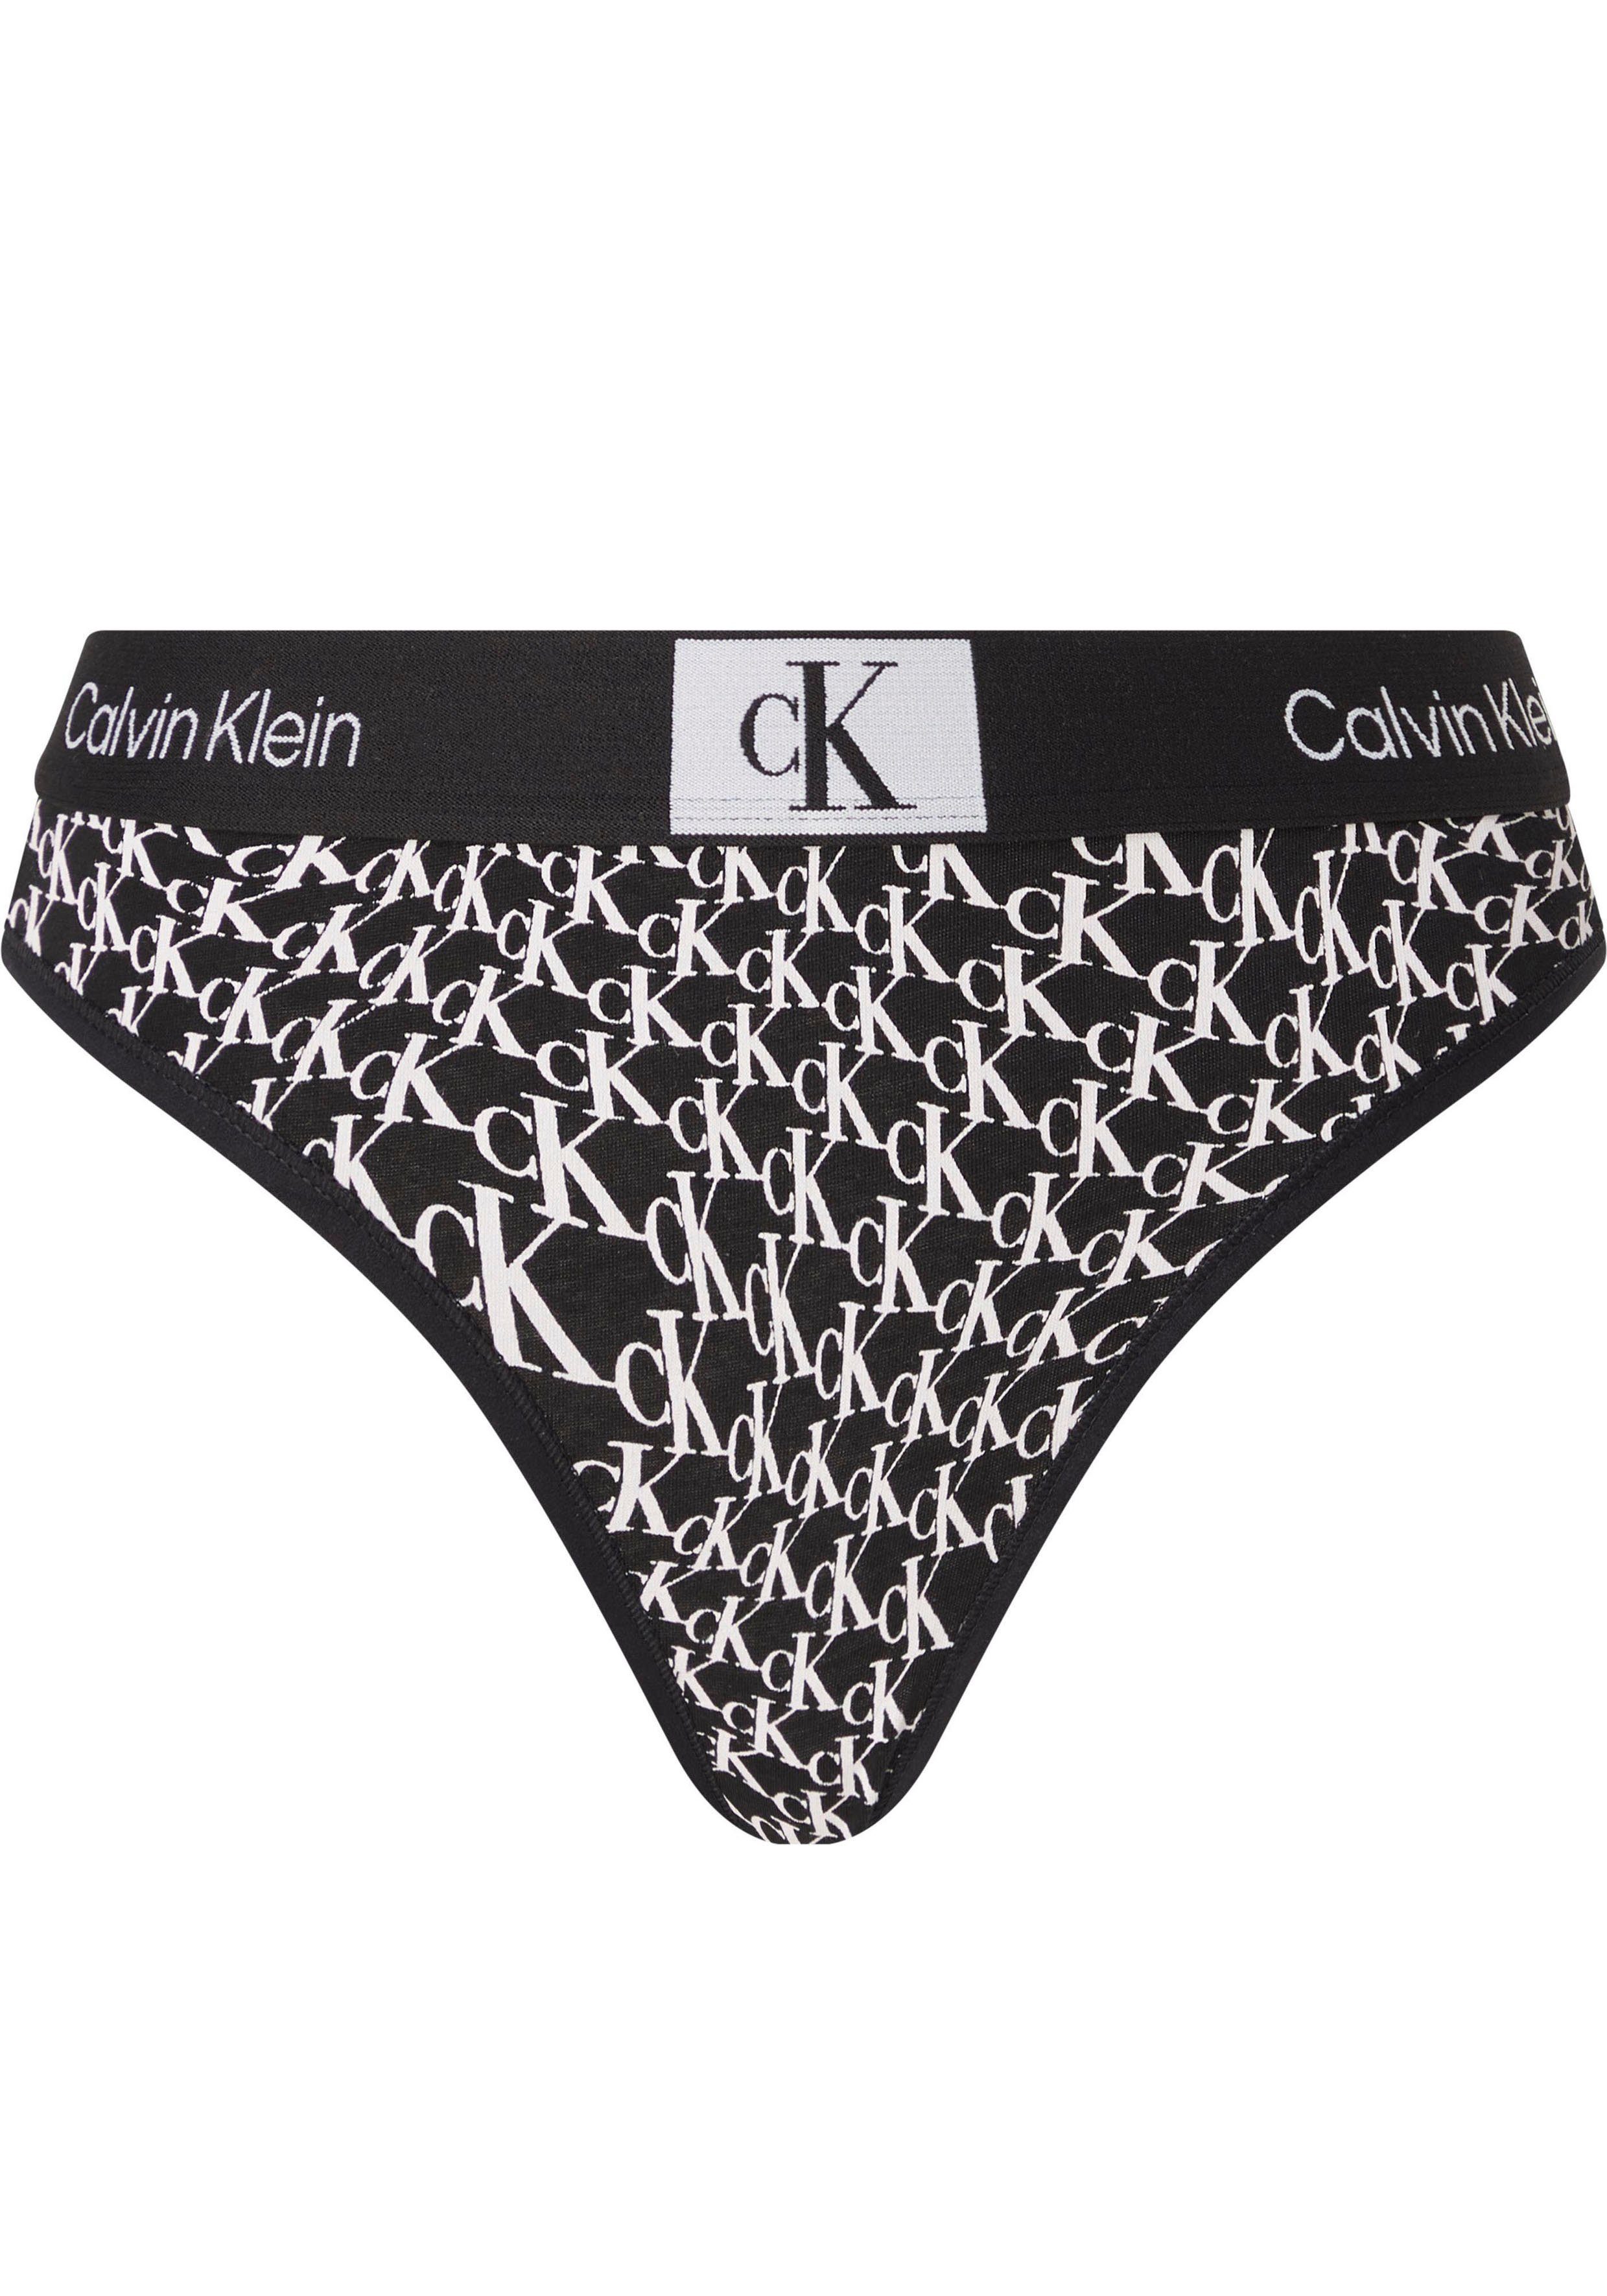 MODERN THONG Klein WARPED-LOGO/BLACK mit Underwear T-String Calvin Alloverprint